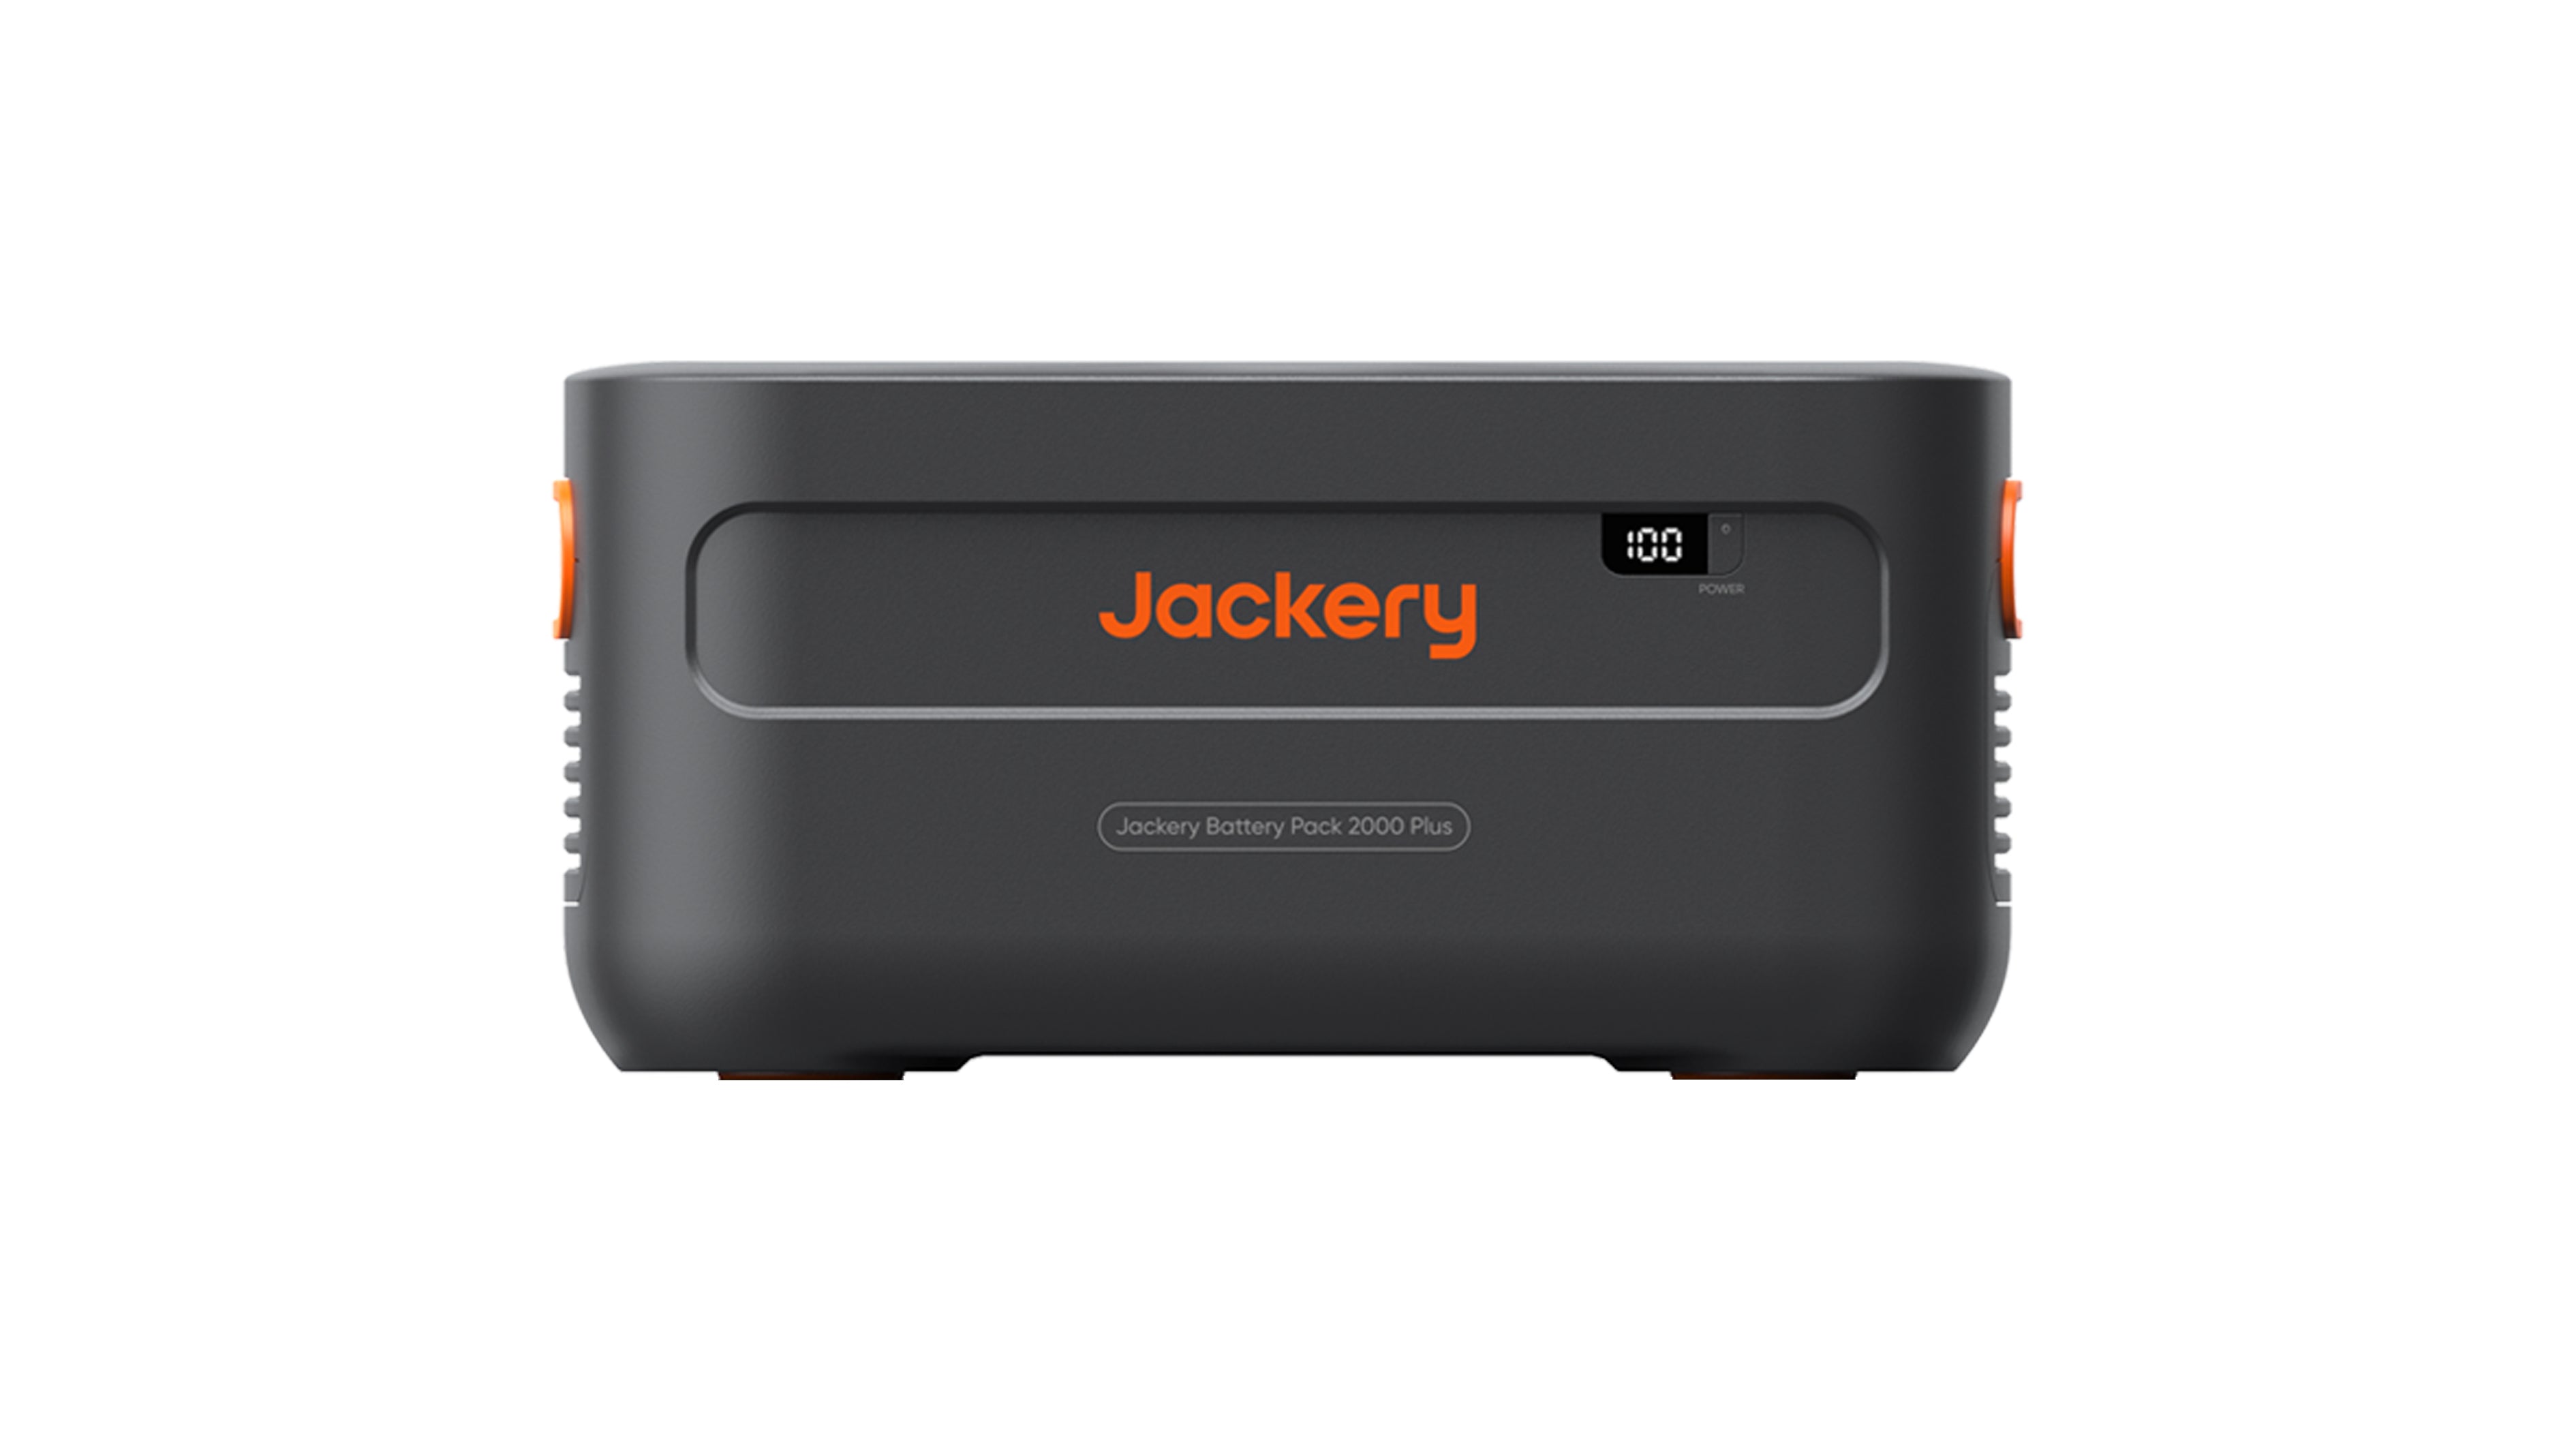 Jackery Batteriepack 2000 Plus